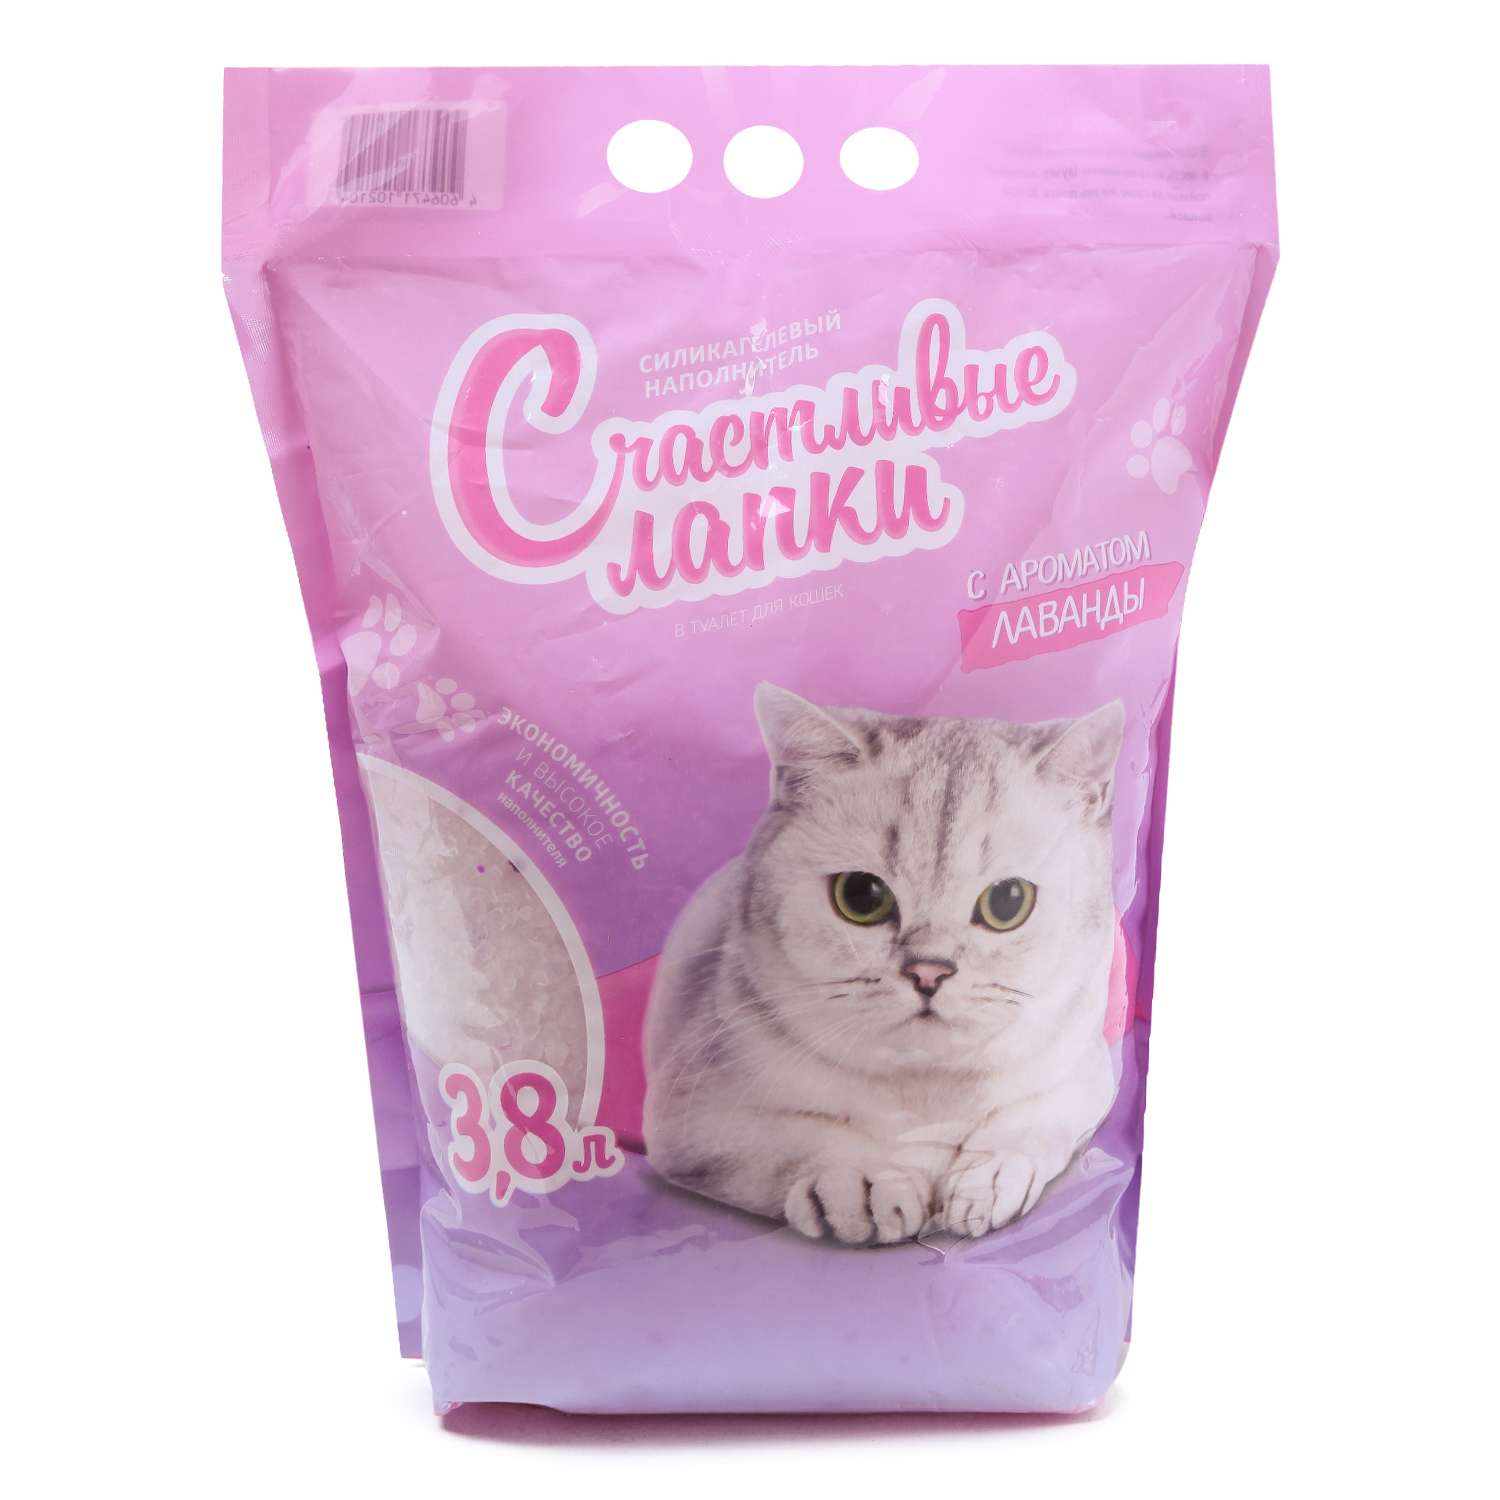 Наполнитель для кошек Счастливые лапки силикагелевый с ароматом лаванды 3.8л - фото 2